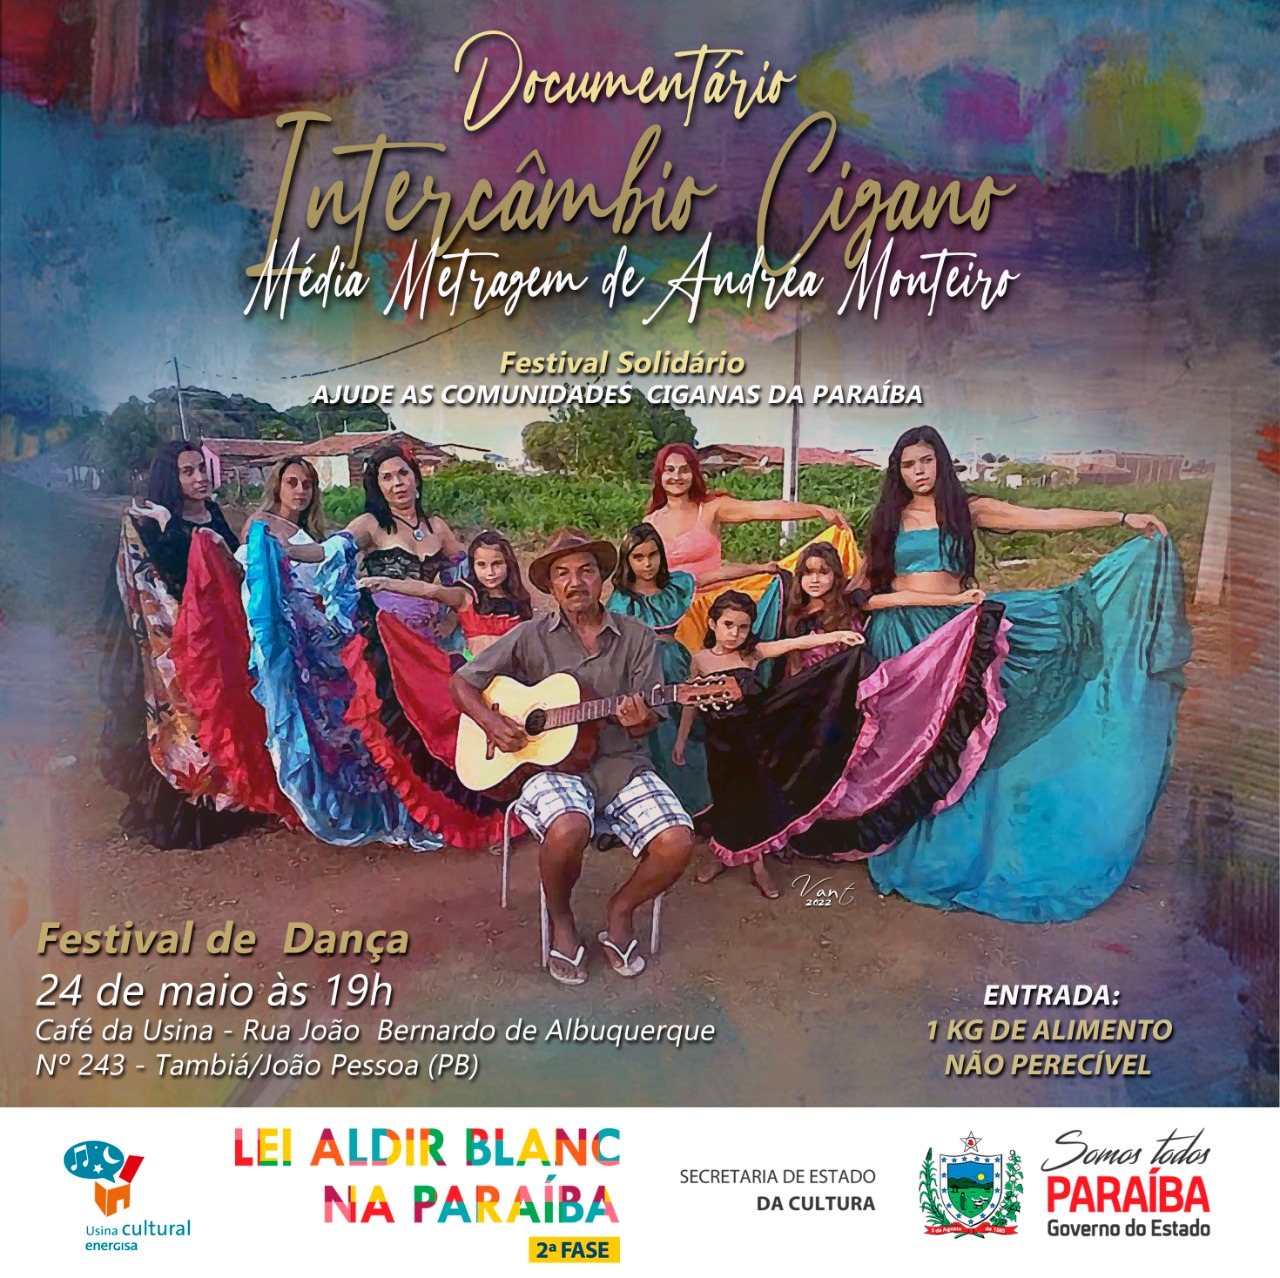 Festival de Dança Retorno’s voltou aos palcos ajudando comunidades ciganas da Paraíba